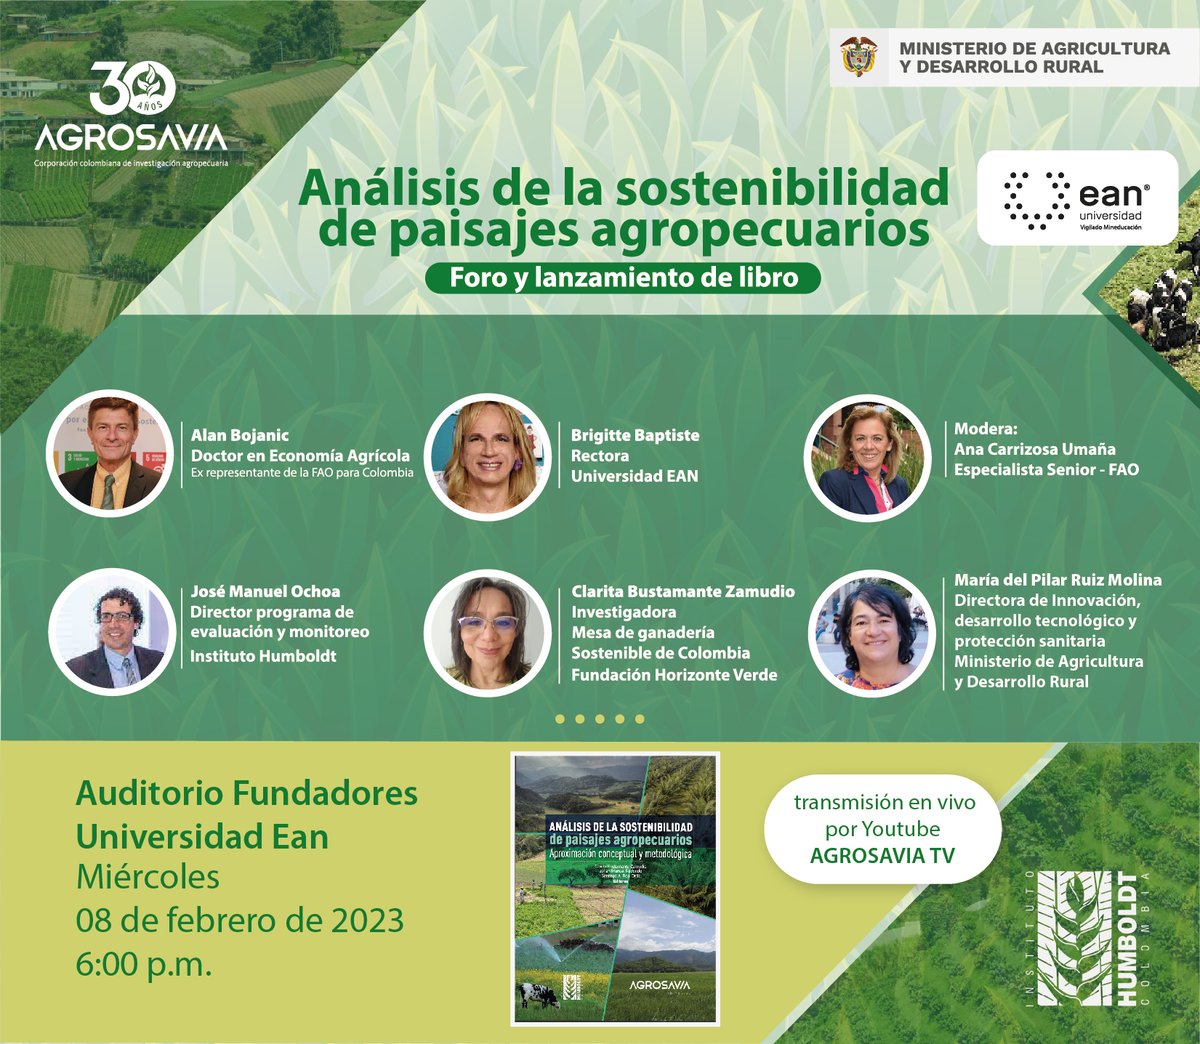 #Eventos2023  #Foro #LanzamientoEditorial Libro: Análisis de la sostenibilidad de paisajes agropecuarios. Este miércoles 8 de febrero, desde las 6 p.m. Ingresa aquí 👉bddy.me/3DwXQla